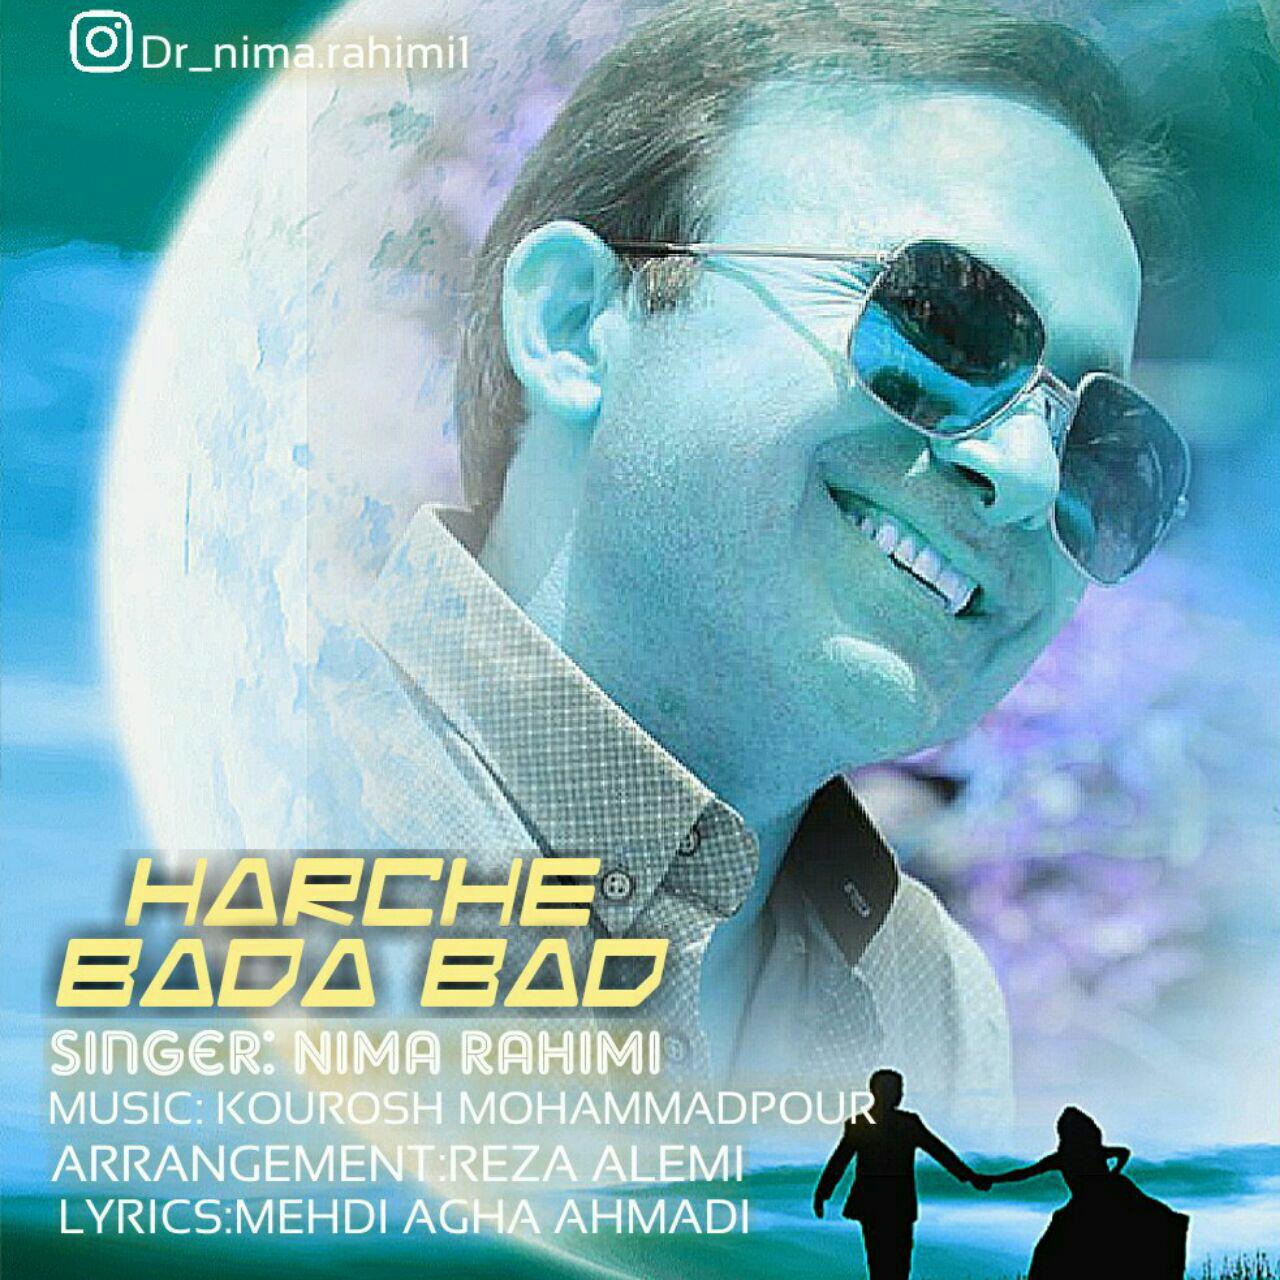  دانلود آهنگ جدید نیما رحیمی - هرچه باداباد | Download New Music By Nima Rahimi - Harche Bada Bad